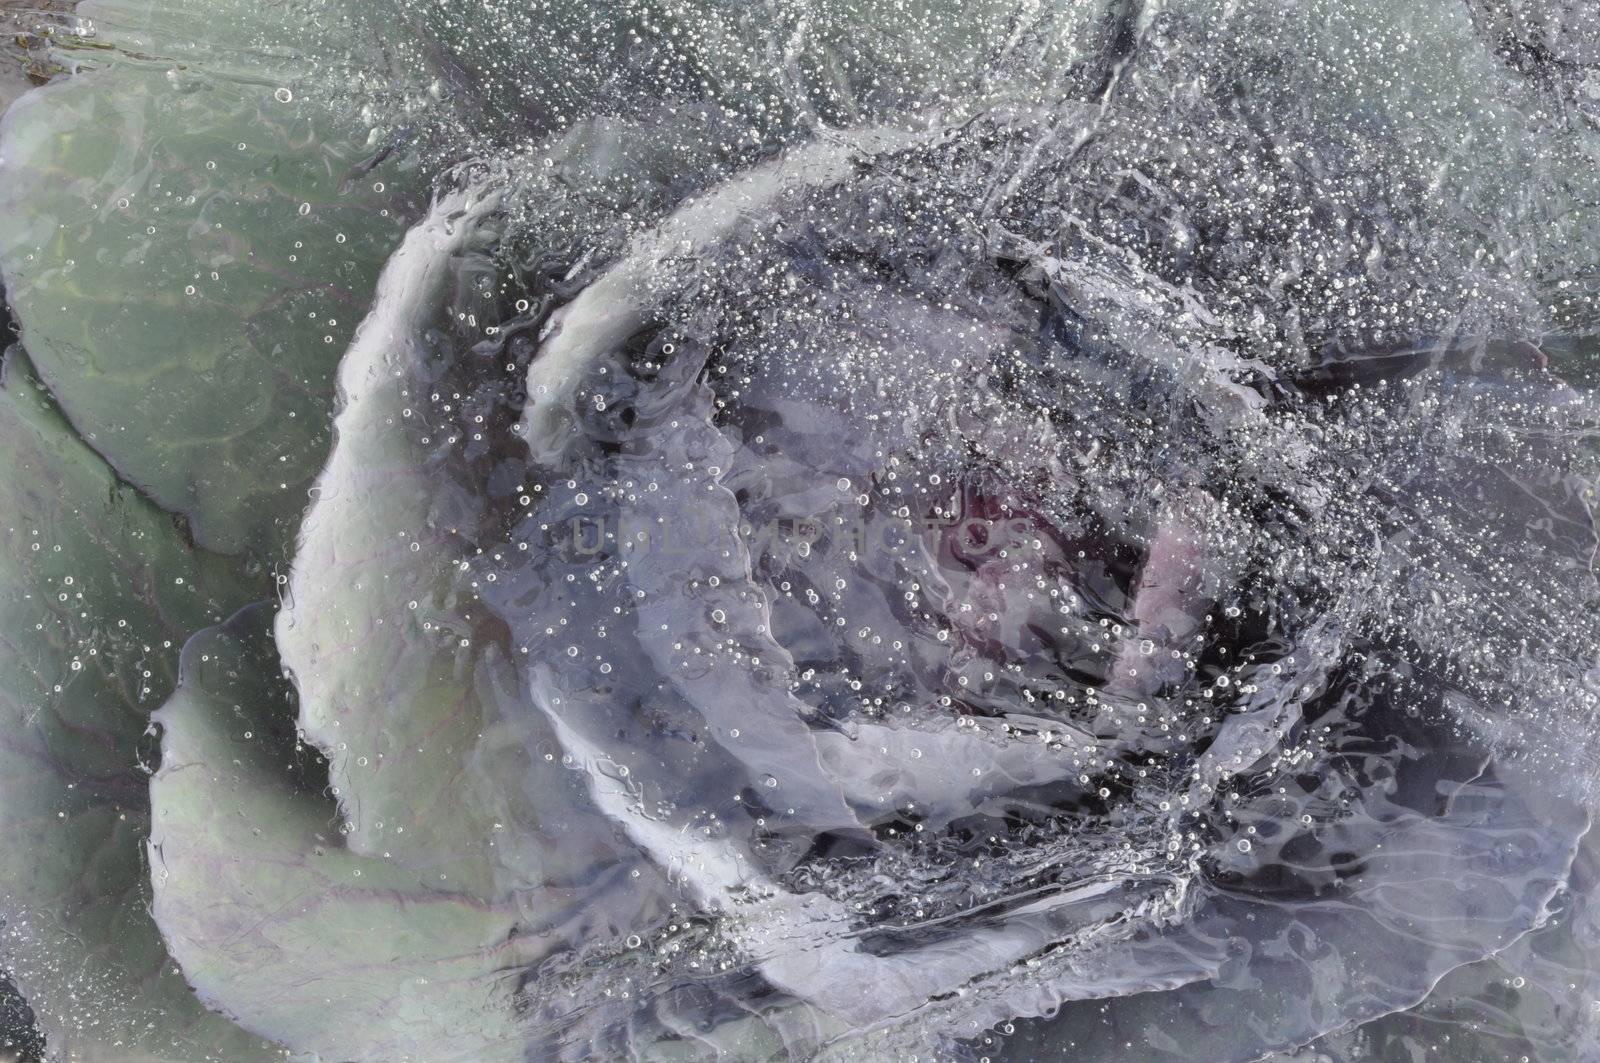 Winter frosty photo: cabbage cauliflower under ice